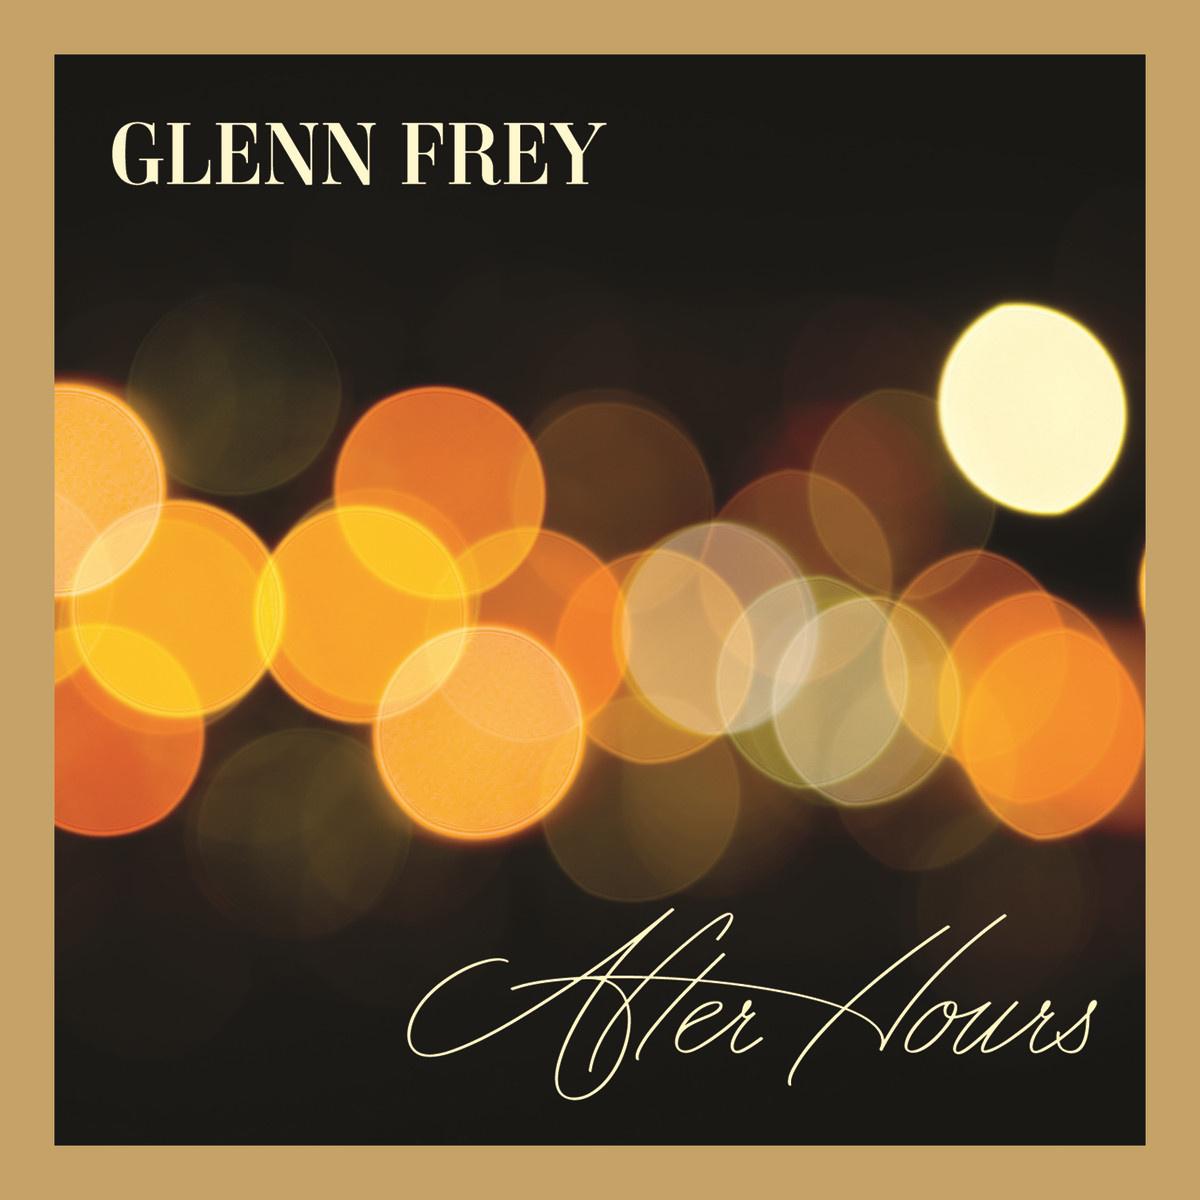 Glenn Frey - It's Too Soon To Know